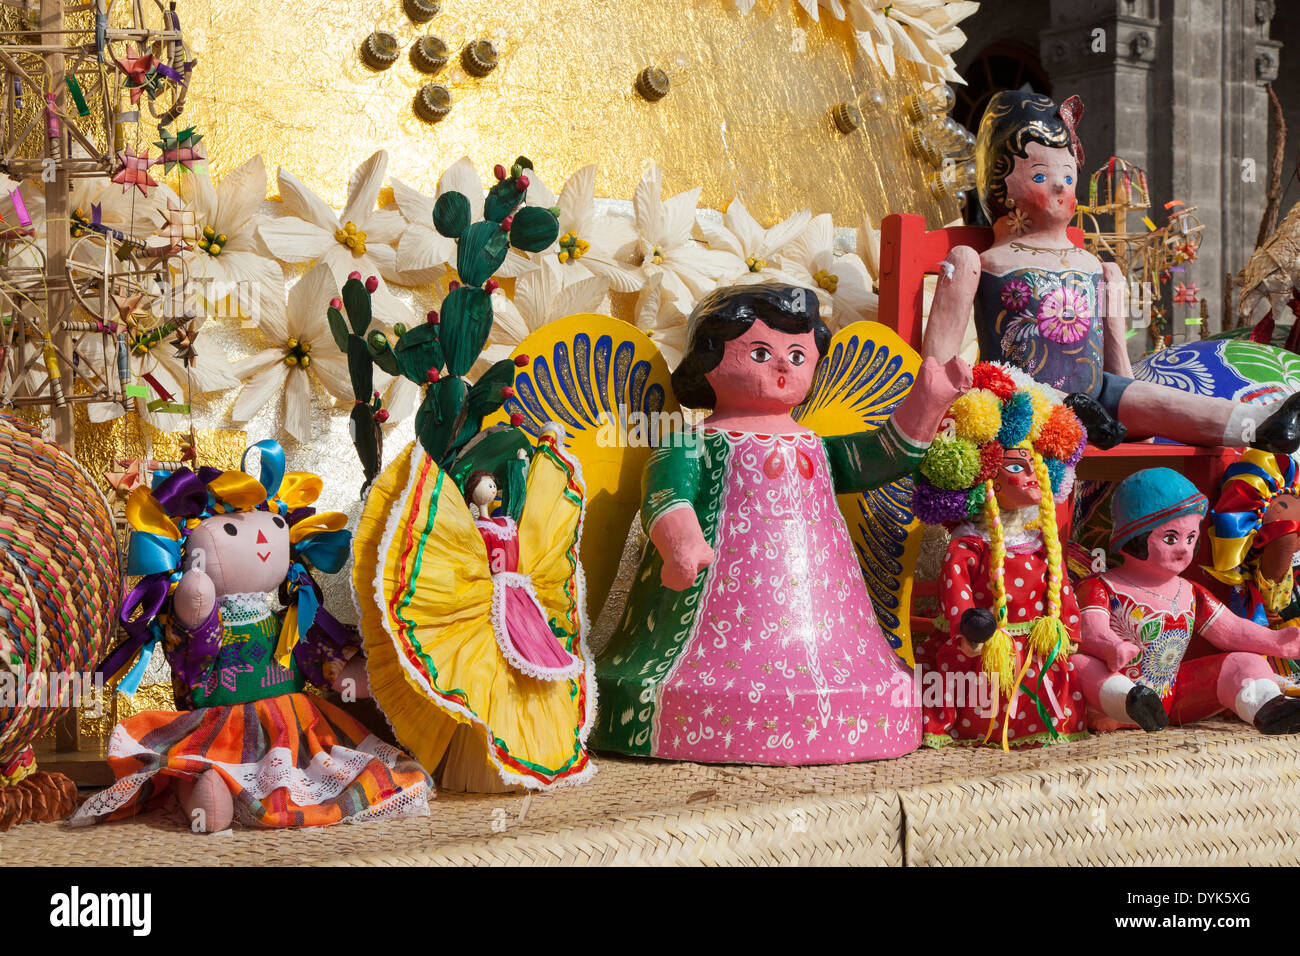 Cartonería figures on display at Chapultepec Castle Stock Photo